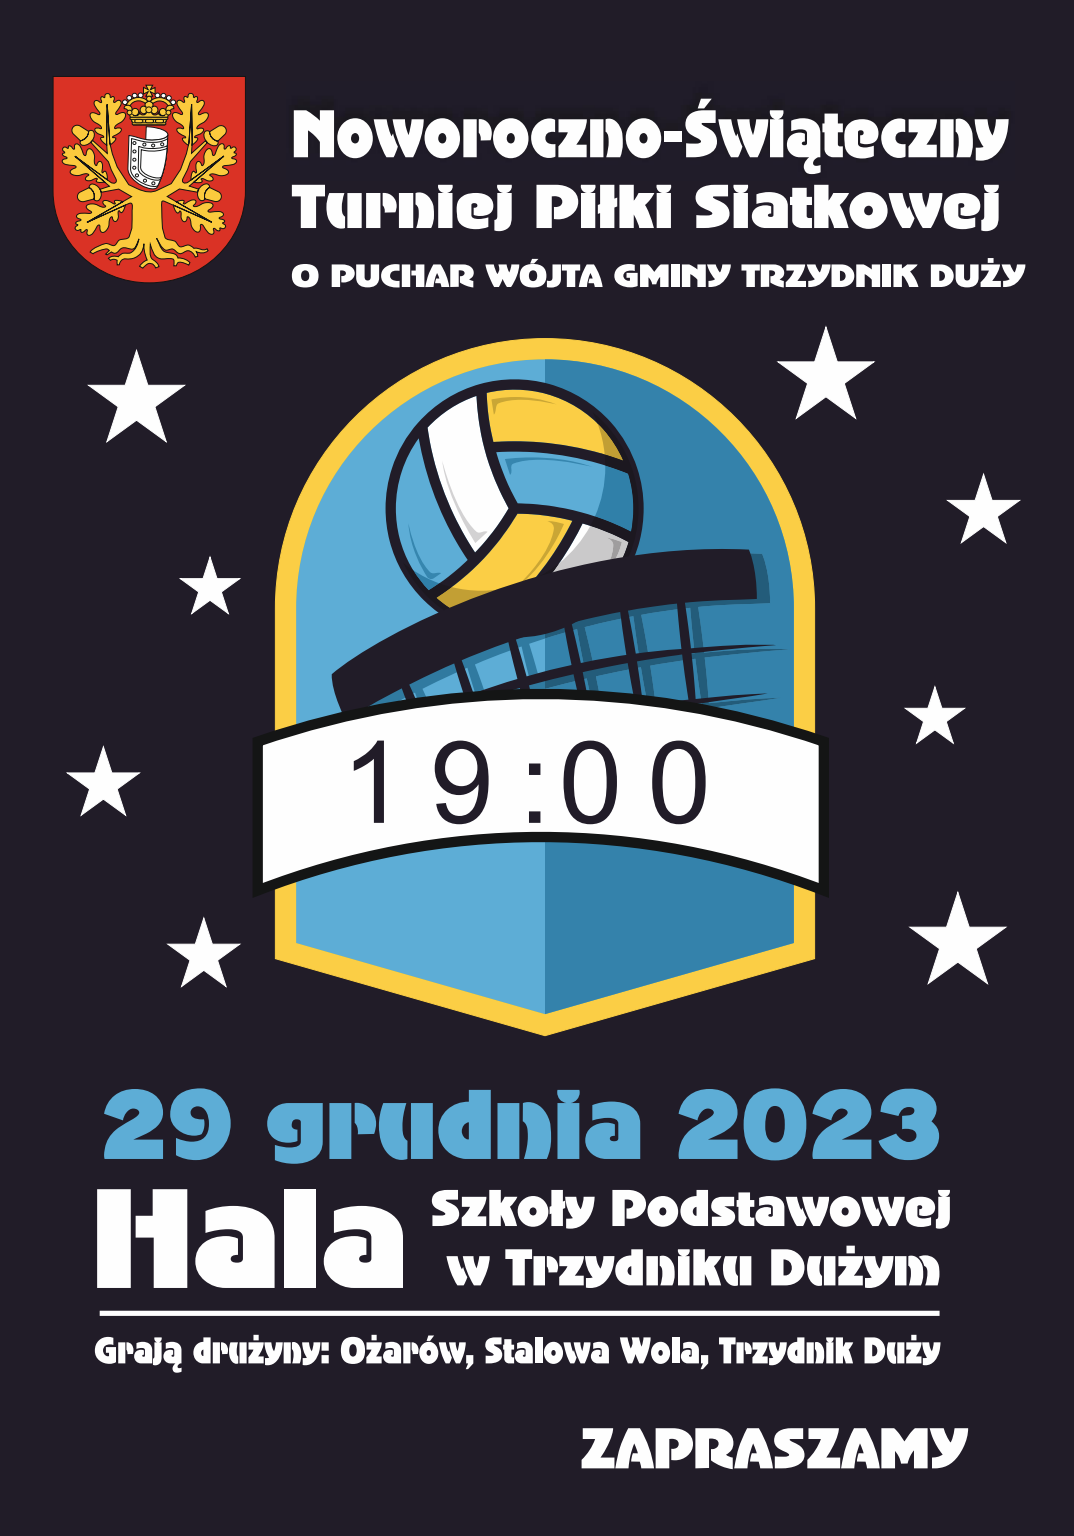 Plakat zapowiadający turniej piłki siatkowej o Puchar Wójta Gminy Trzydnik Duży, 29 grudnia 2023 o godz. 19:00 w Hali Szkoły Podstawowej. Zawiera herby, datę, godzinę i informacje o lokalizacji.